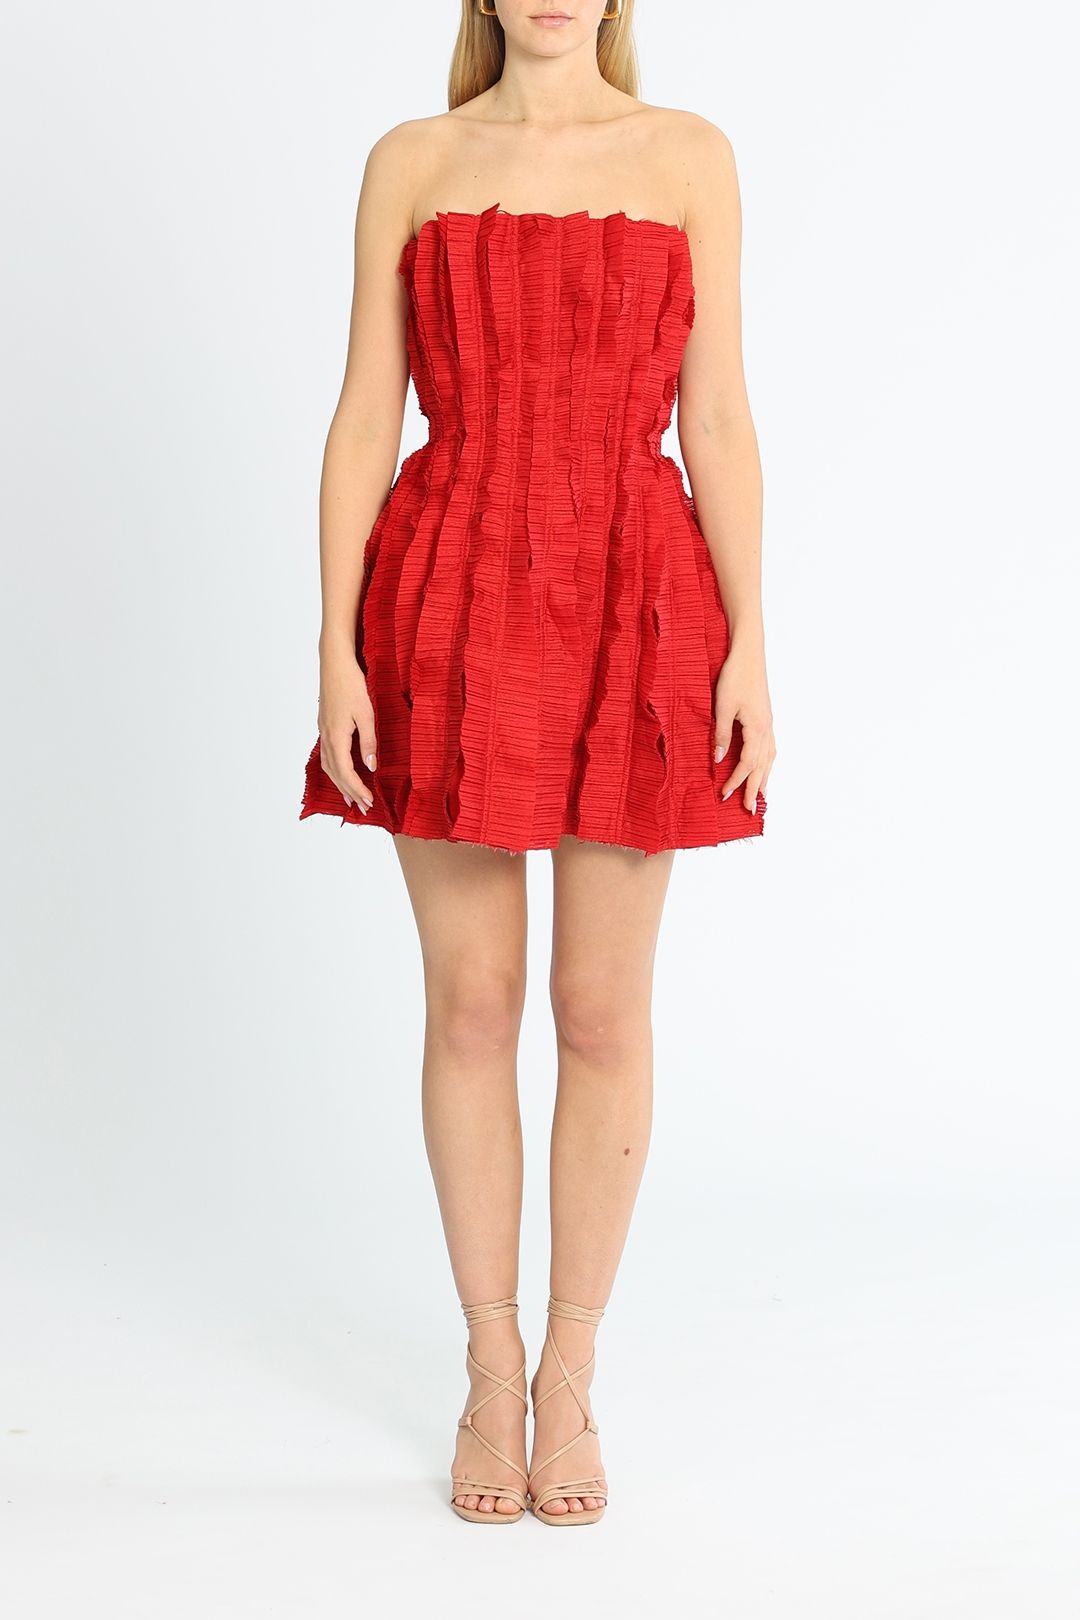 Hire Hybrid Mini Dress In Red Aje Glamcorner 